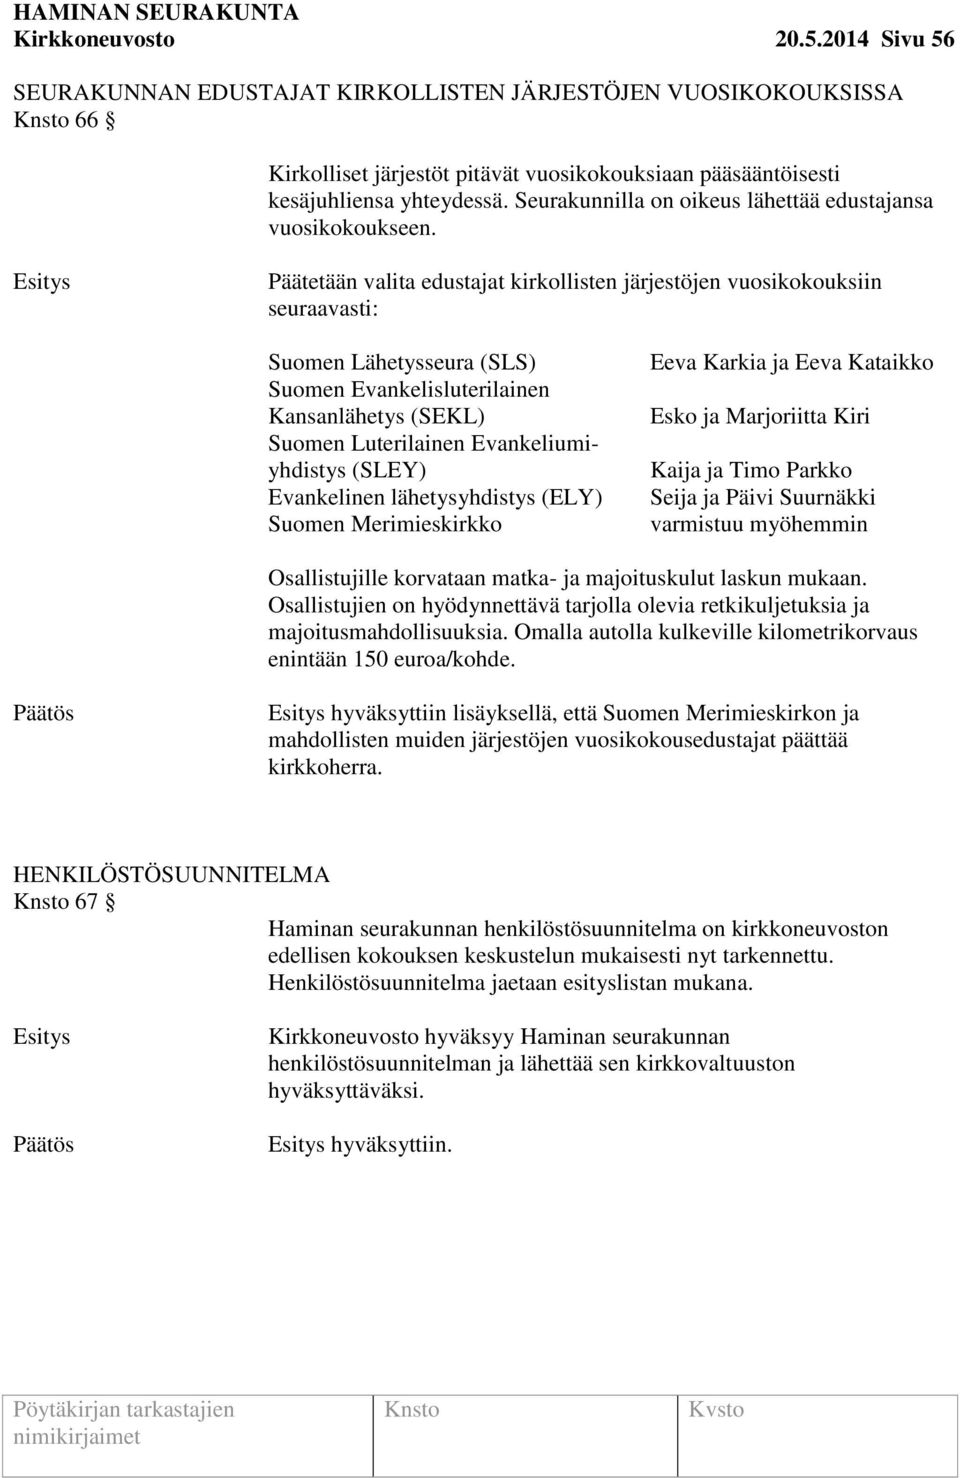 Päätetään valita edustajat kirkollisten järjestöjen vuosikokouksiin seuraavasti: Suomen Lähetysseura (SLS) Suomen Evankelisluterilainen Kansanlähetys (SEKL) Suomen Luterilainen Evankeliumiyhdistys